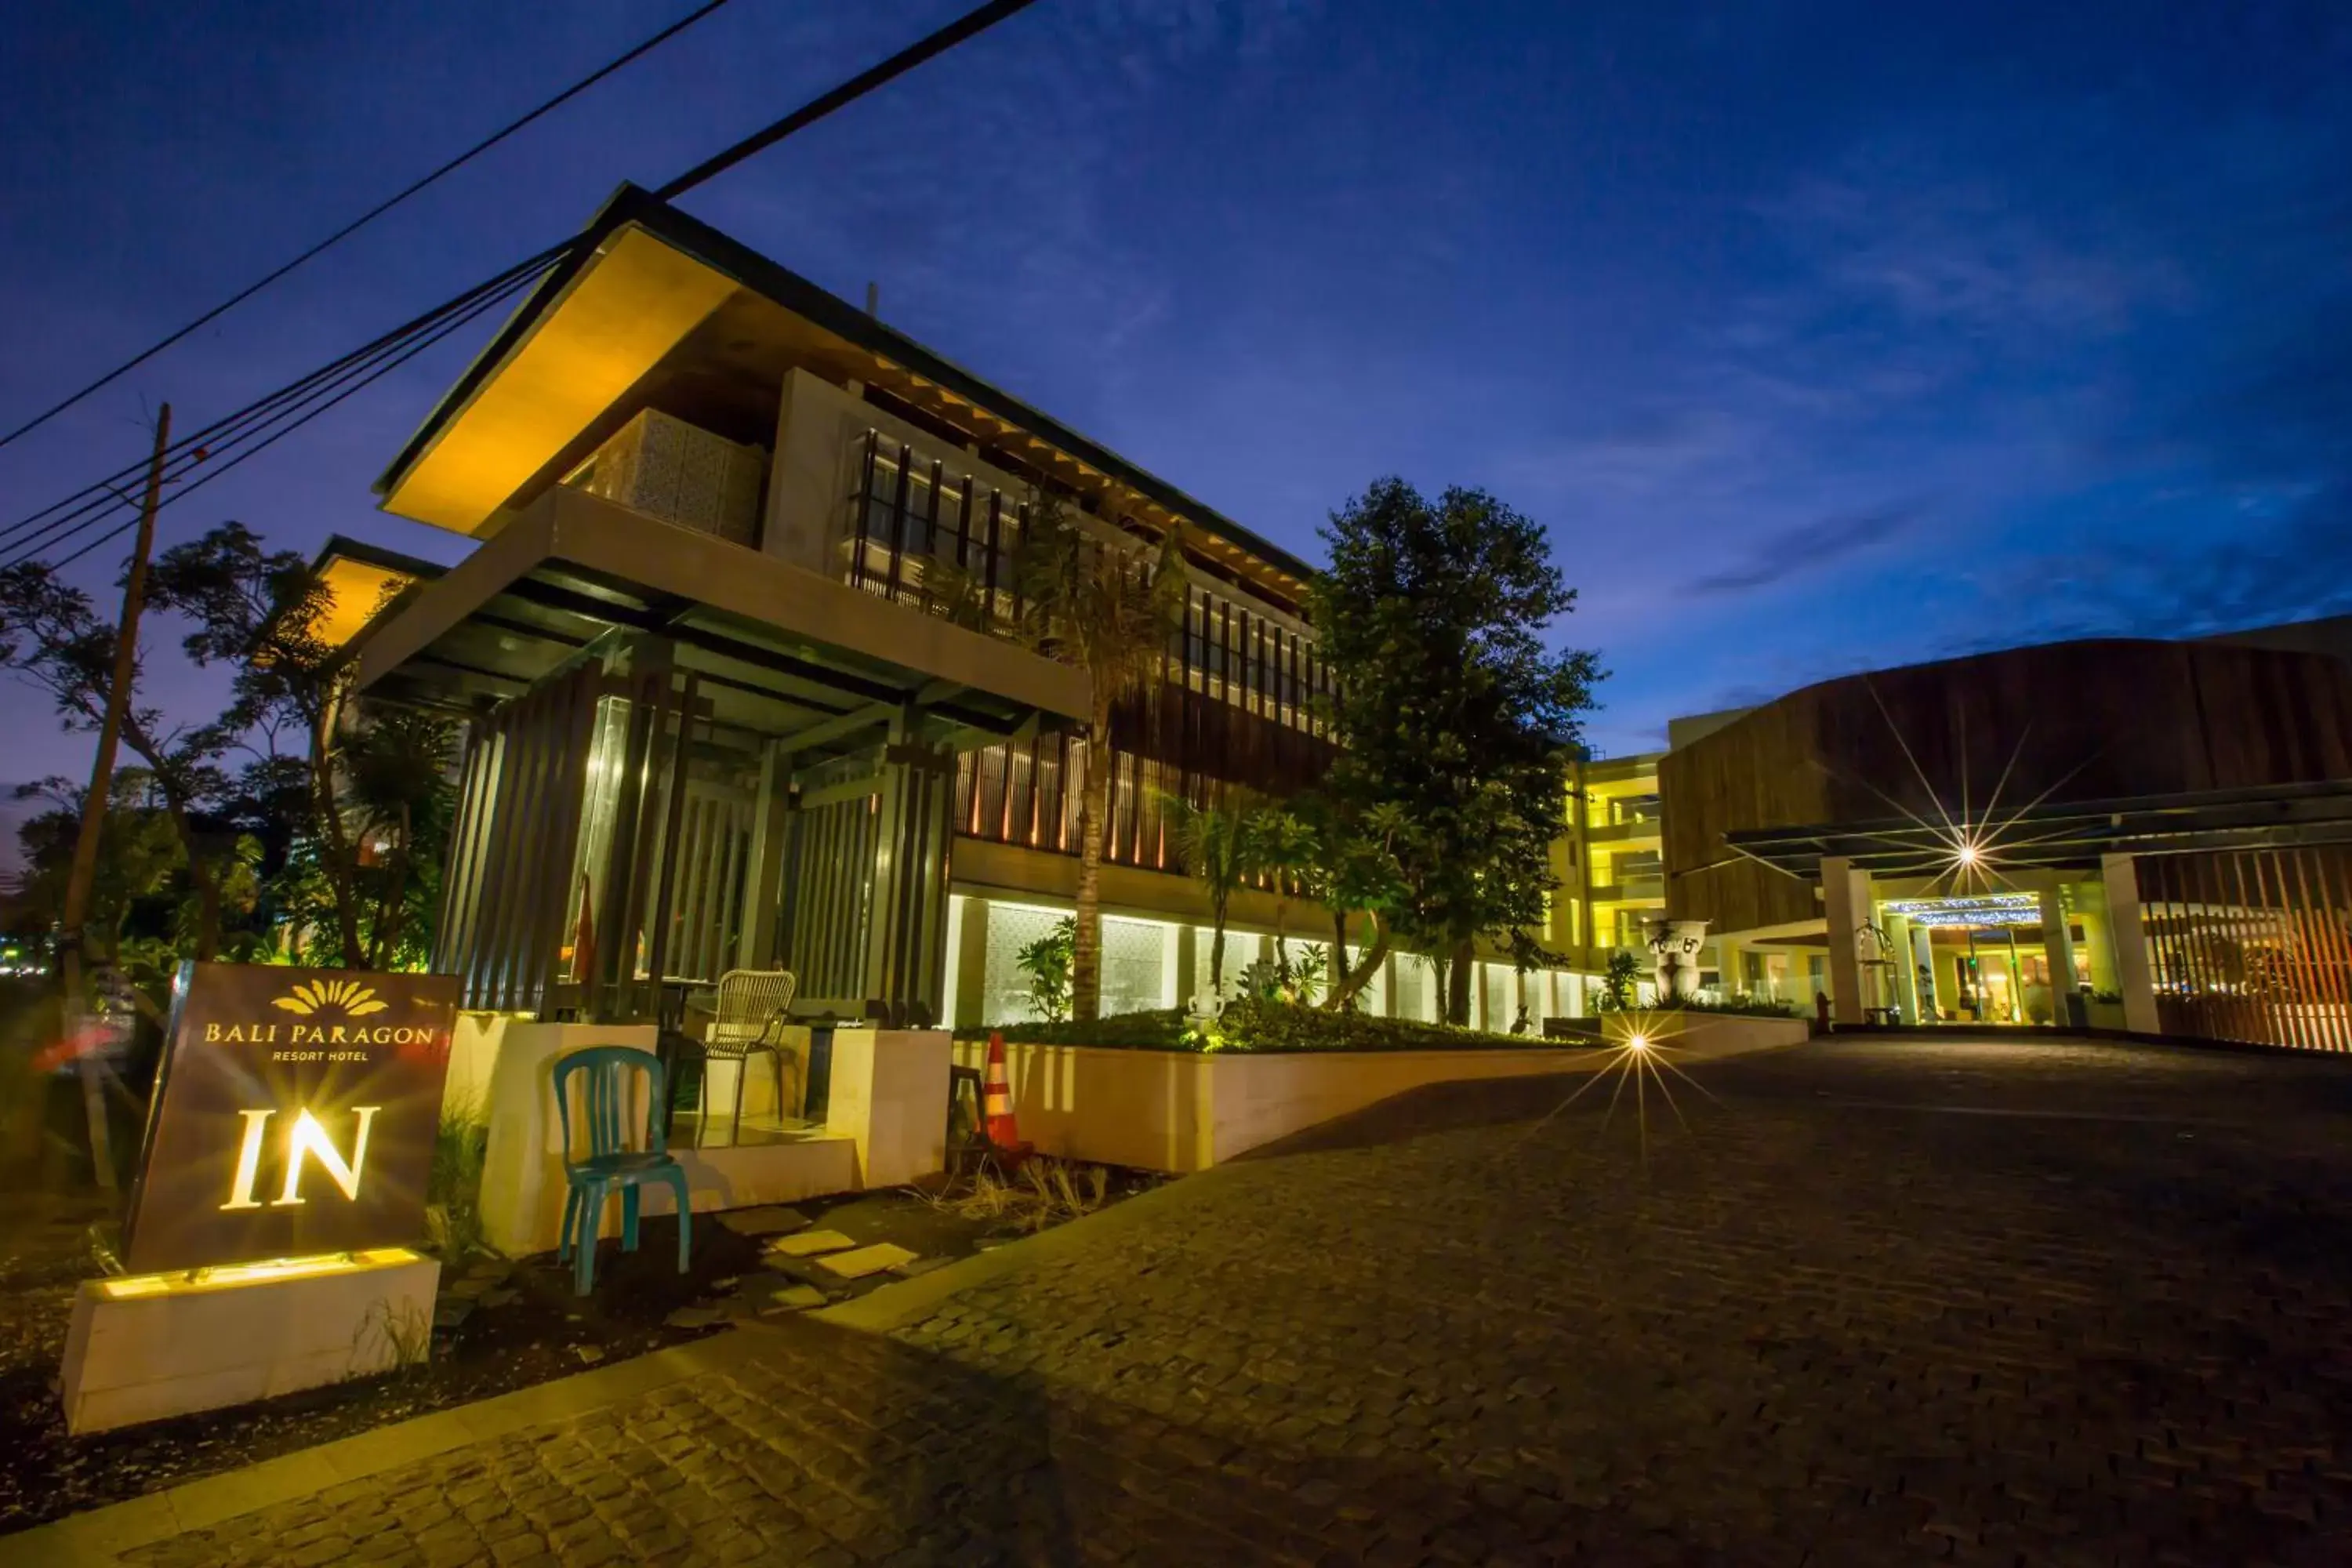 Property building, Facade/Entrance in Bali Paragon Resort Hotel